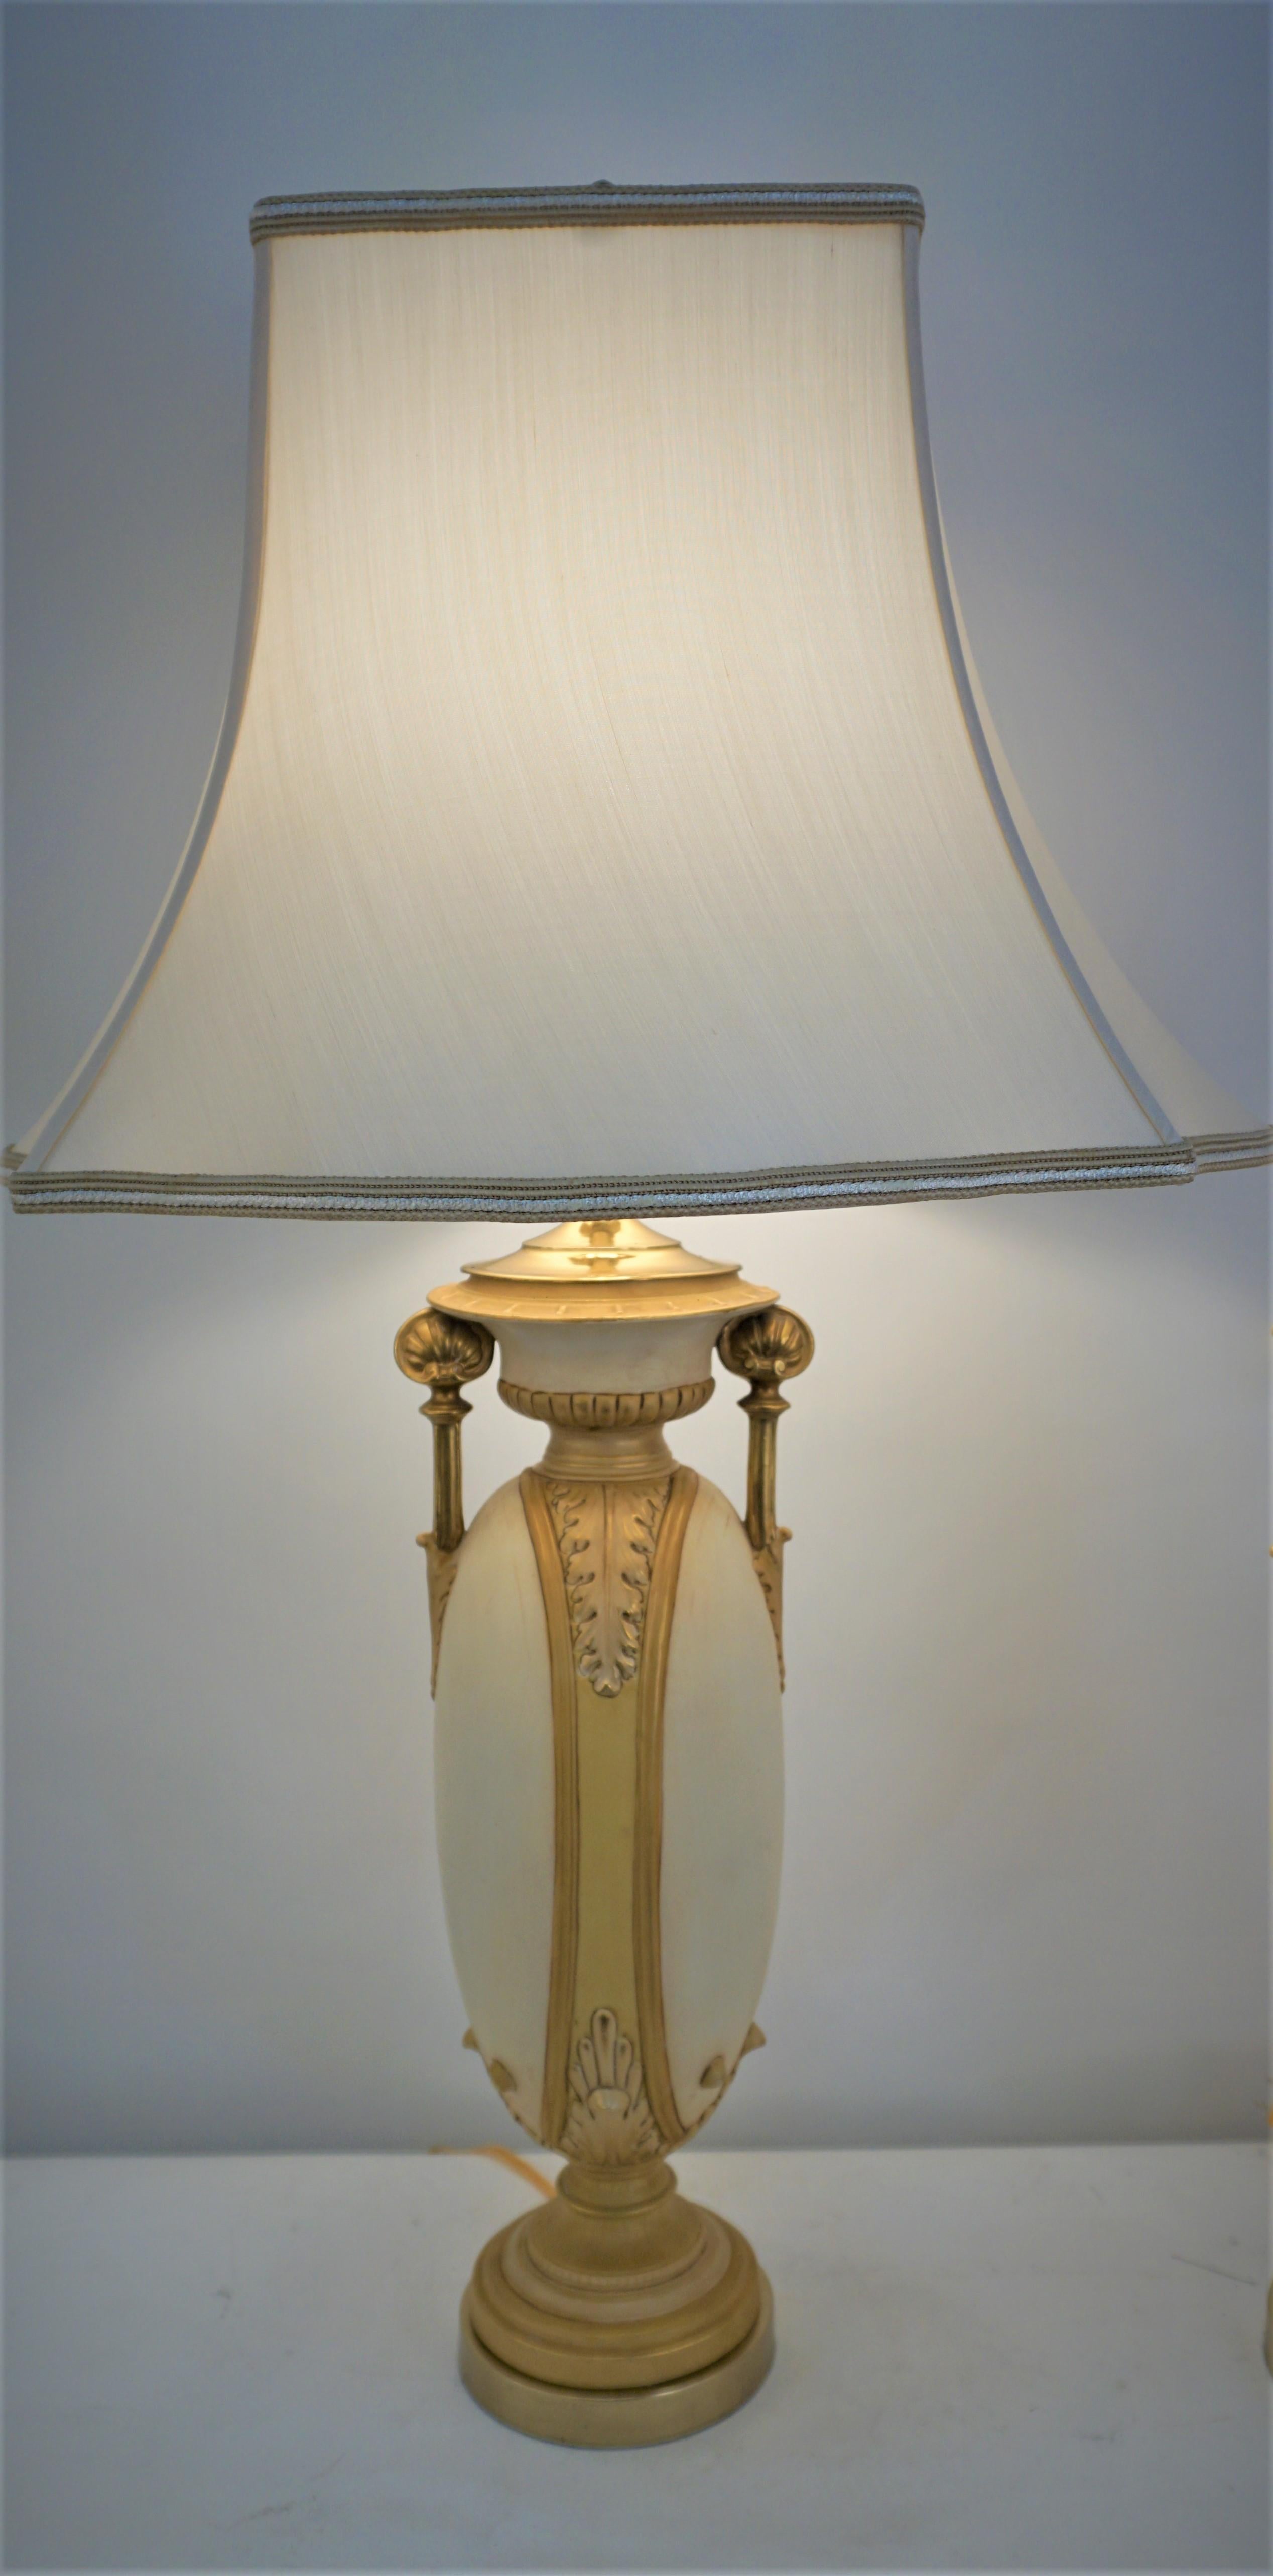 Zwei Porzellanvasen mit klassischem Design, die zu Tischlampen umfunktioniert und mit Lampenschirmen aus Seide versehen wurden.
Die Messung umfasst die Lampenschirme.